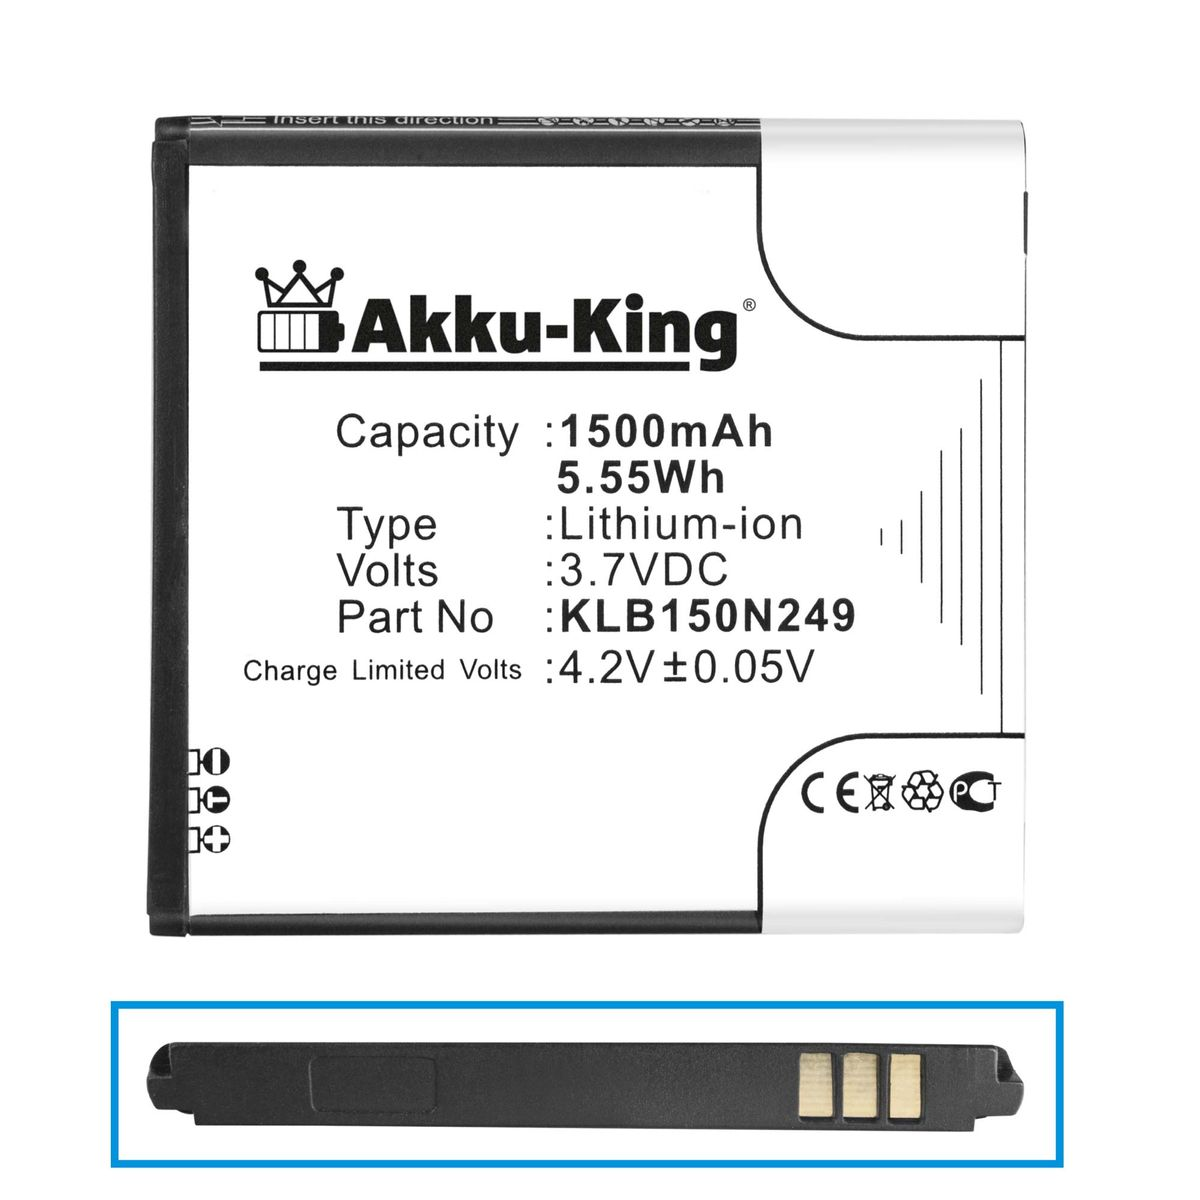 1500mAh AKKU-KING Kazam Li-Ion Volt, Handy-Akku, KLB150N249 3.7 kompatibel mit Akku